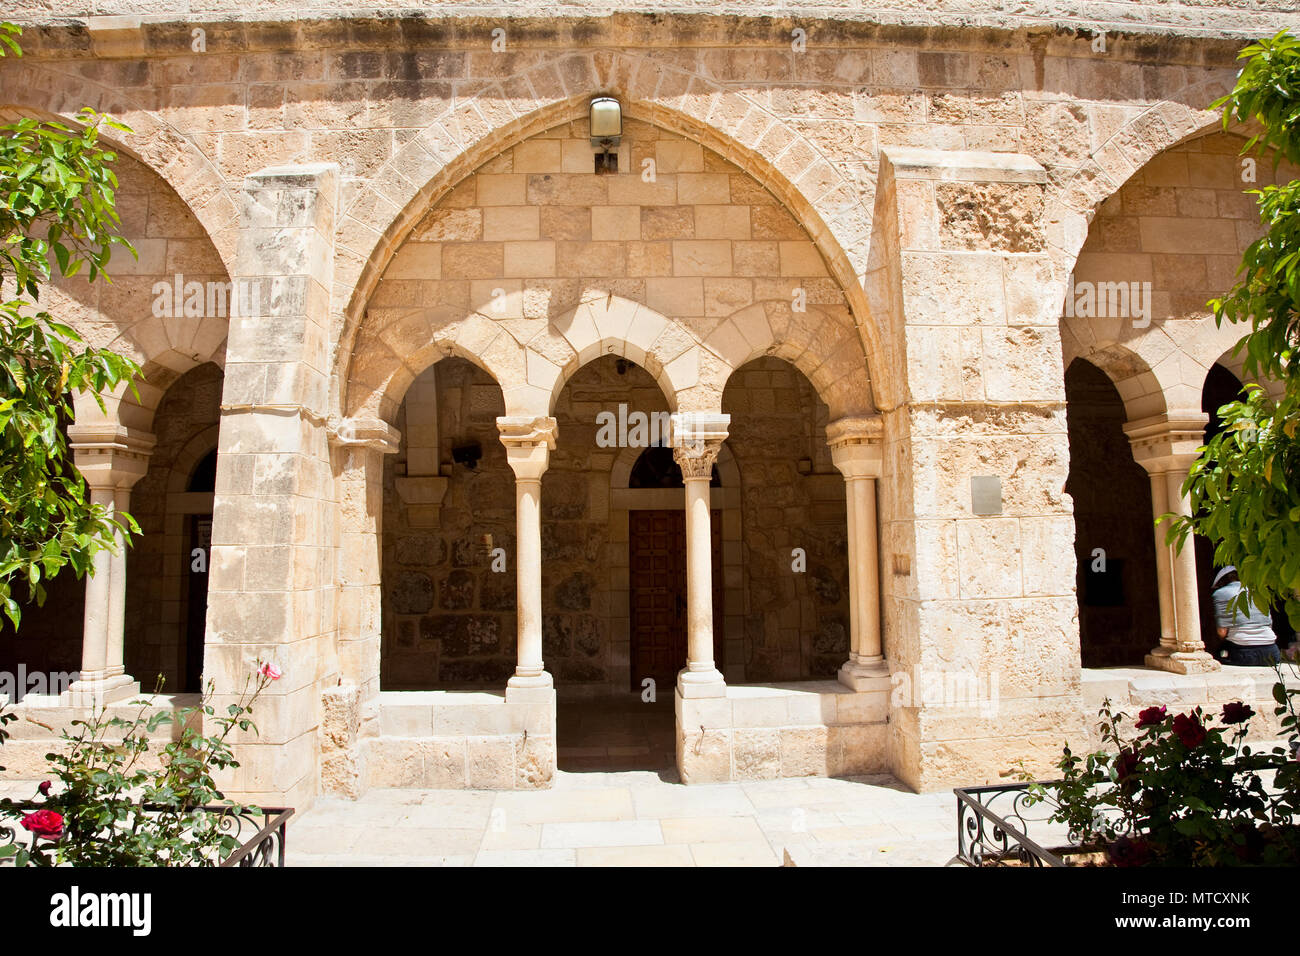 Eingang inf die Galerie von der Geburtskirche Bethlehem heißt. Palästina, Israel Stockfoto